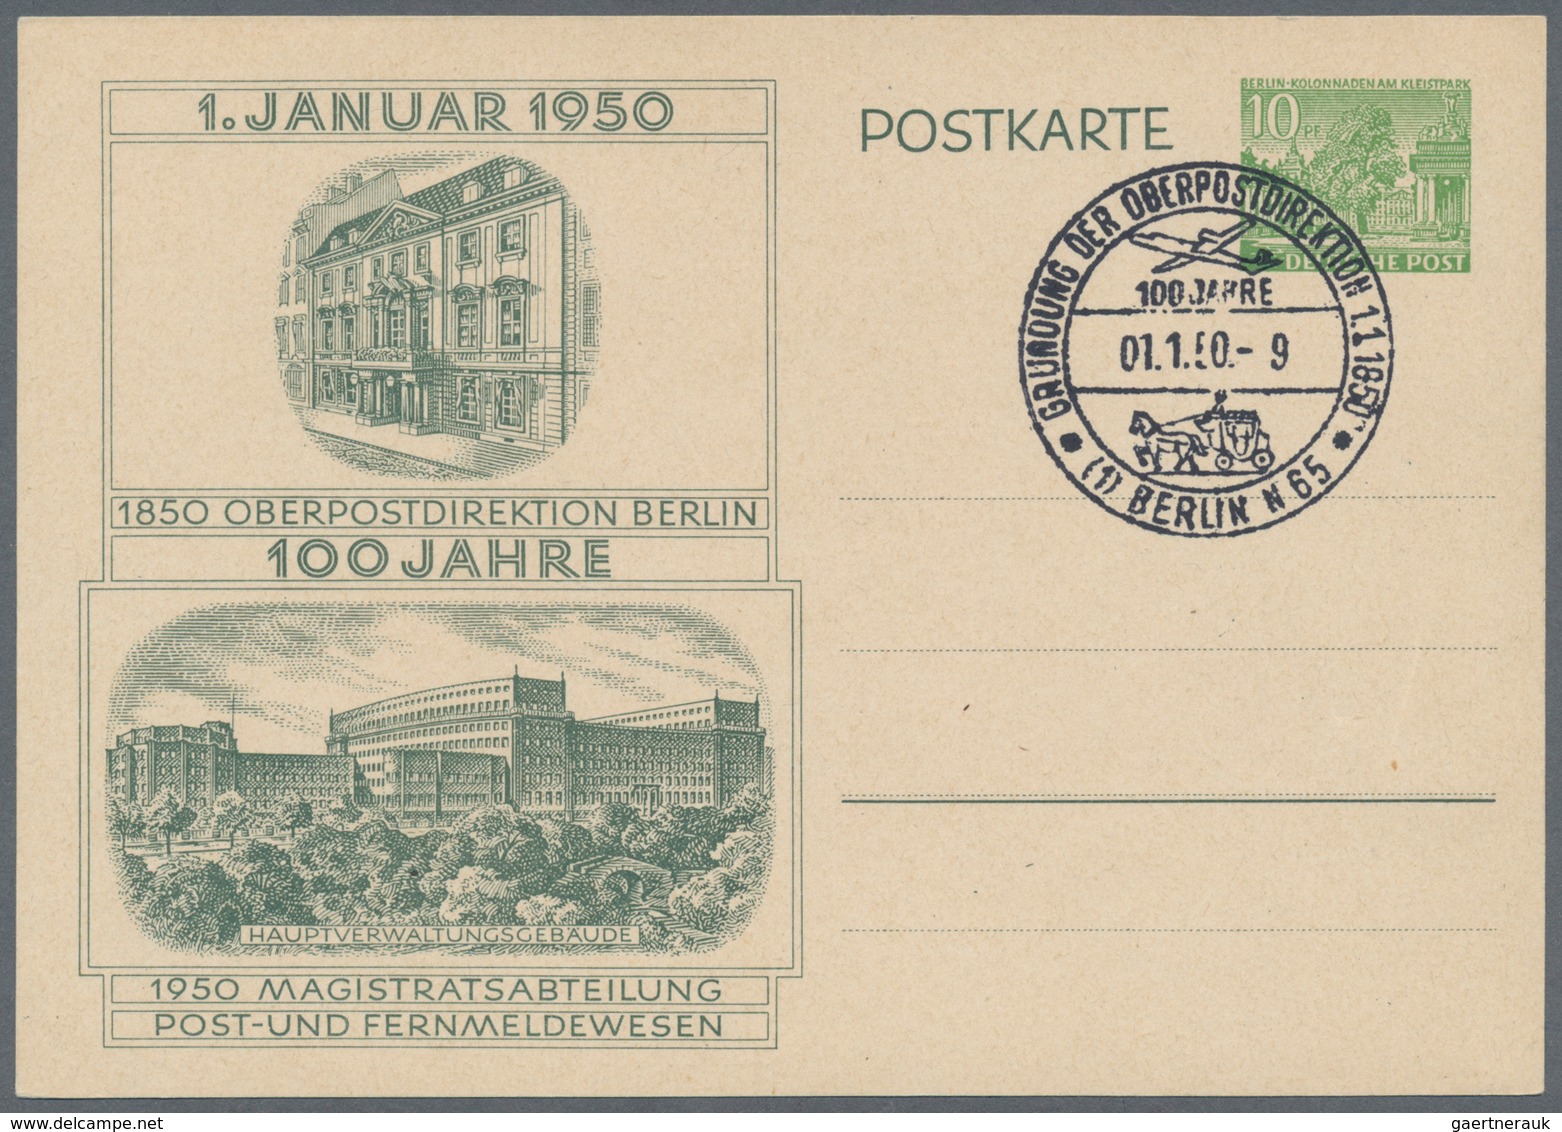 Berlin: 1950, 100 JAHRE OPD BERLIN, interessante Zusammenstellung mit 3 Ganzsachen mit verschiedenen